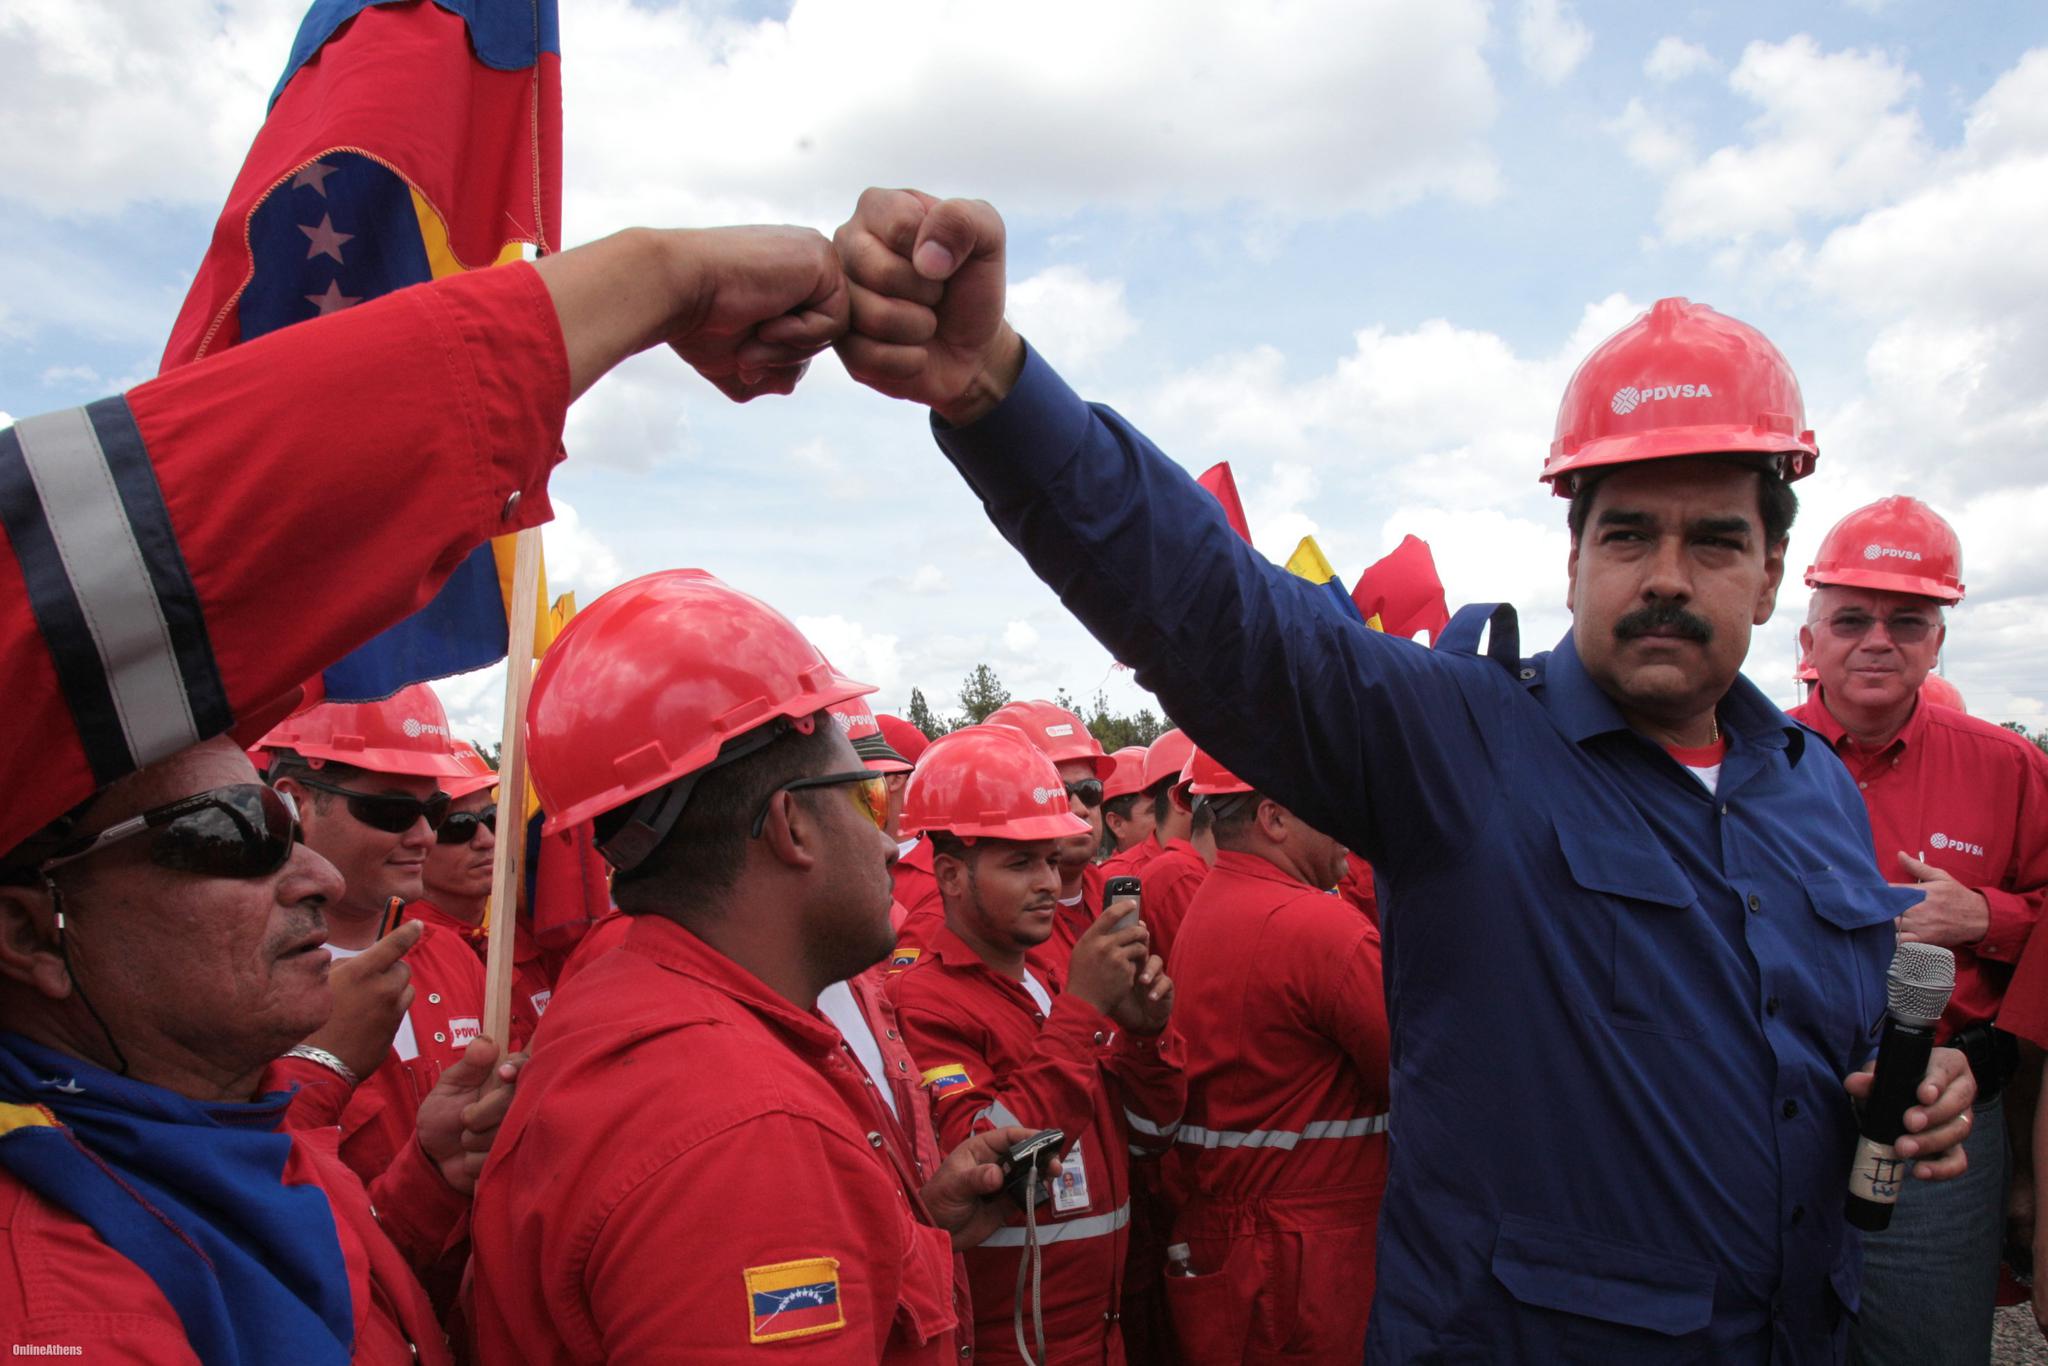 中国再伸援手!2.5亿美元助委内瑞拉增加原油产能